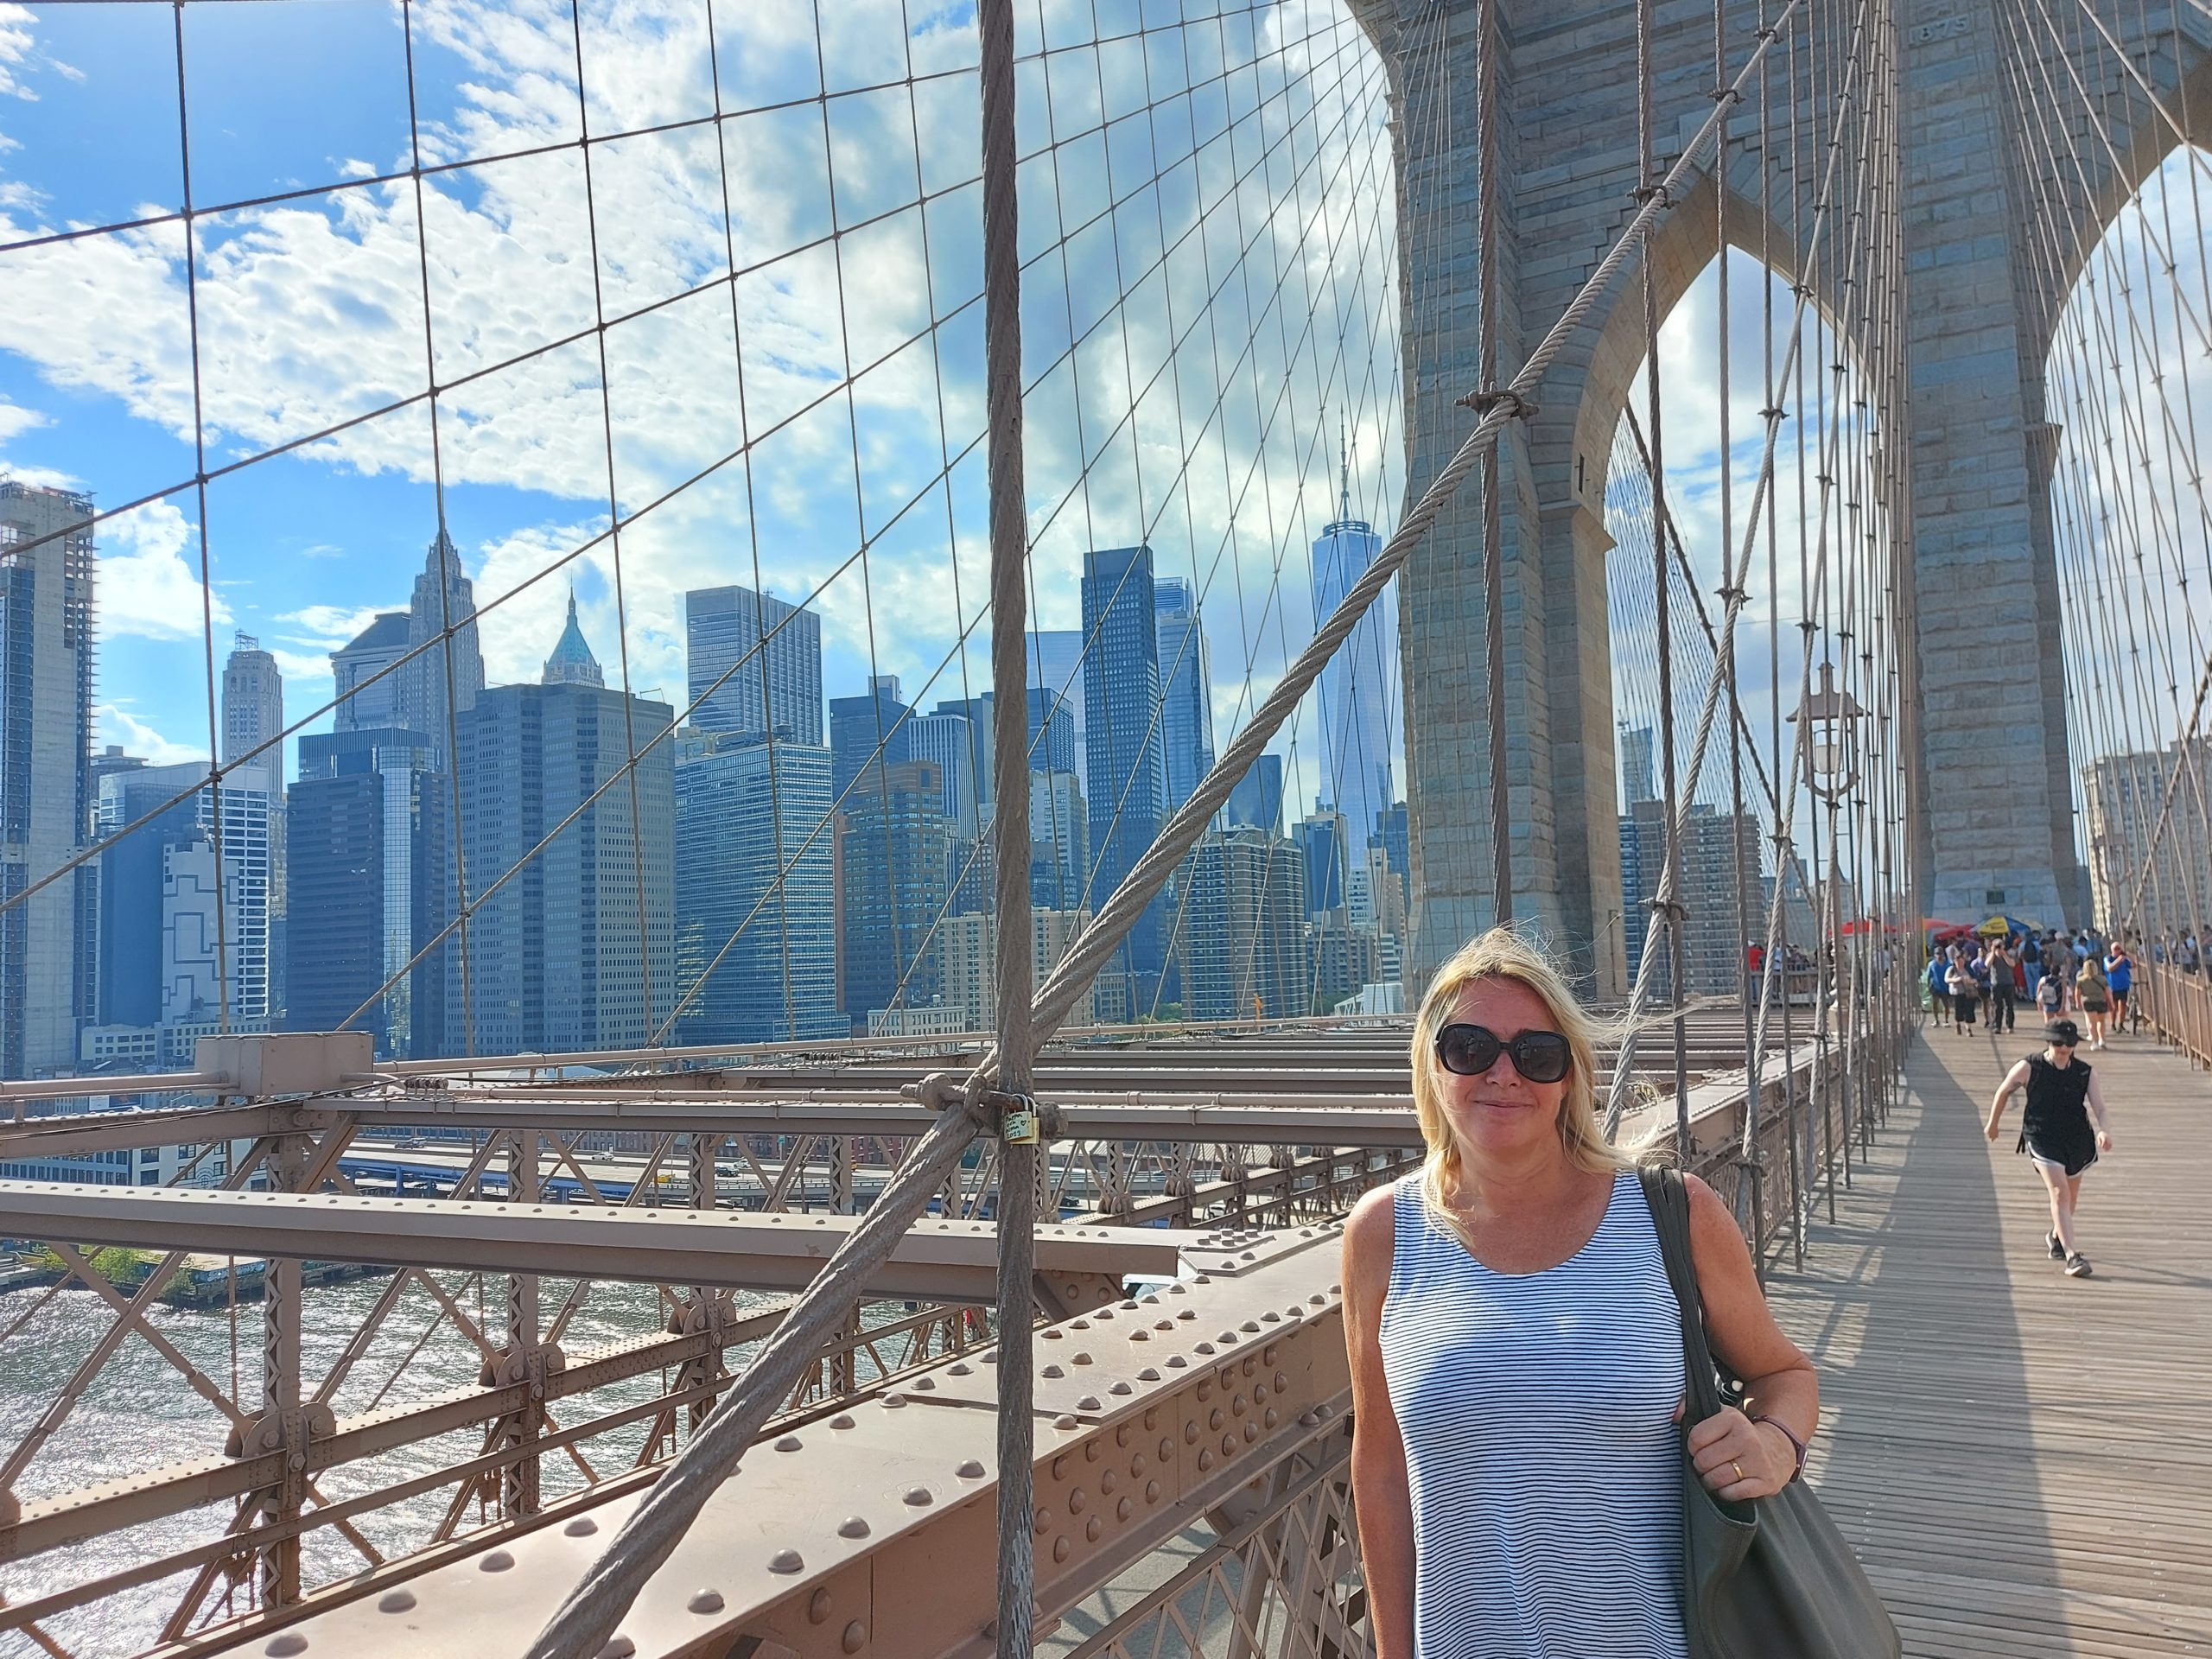 Brooklyn Bridge, NY / Kimberly Sullivan